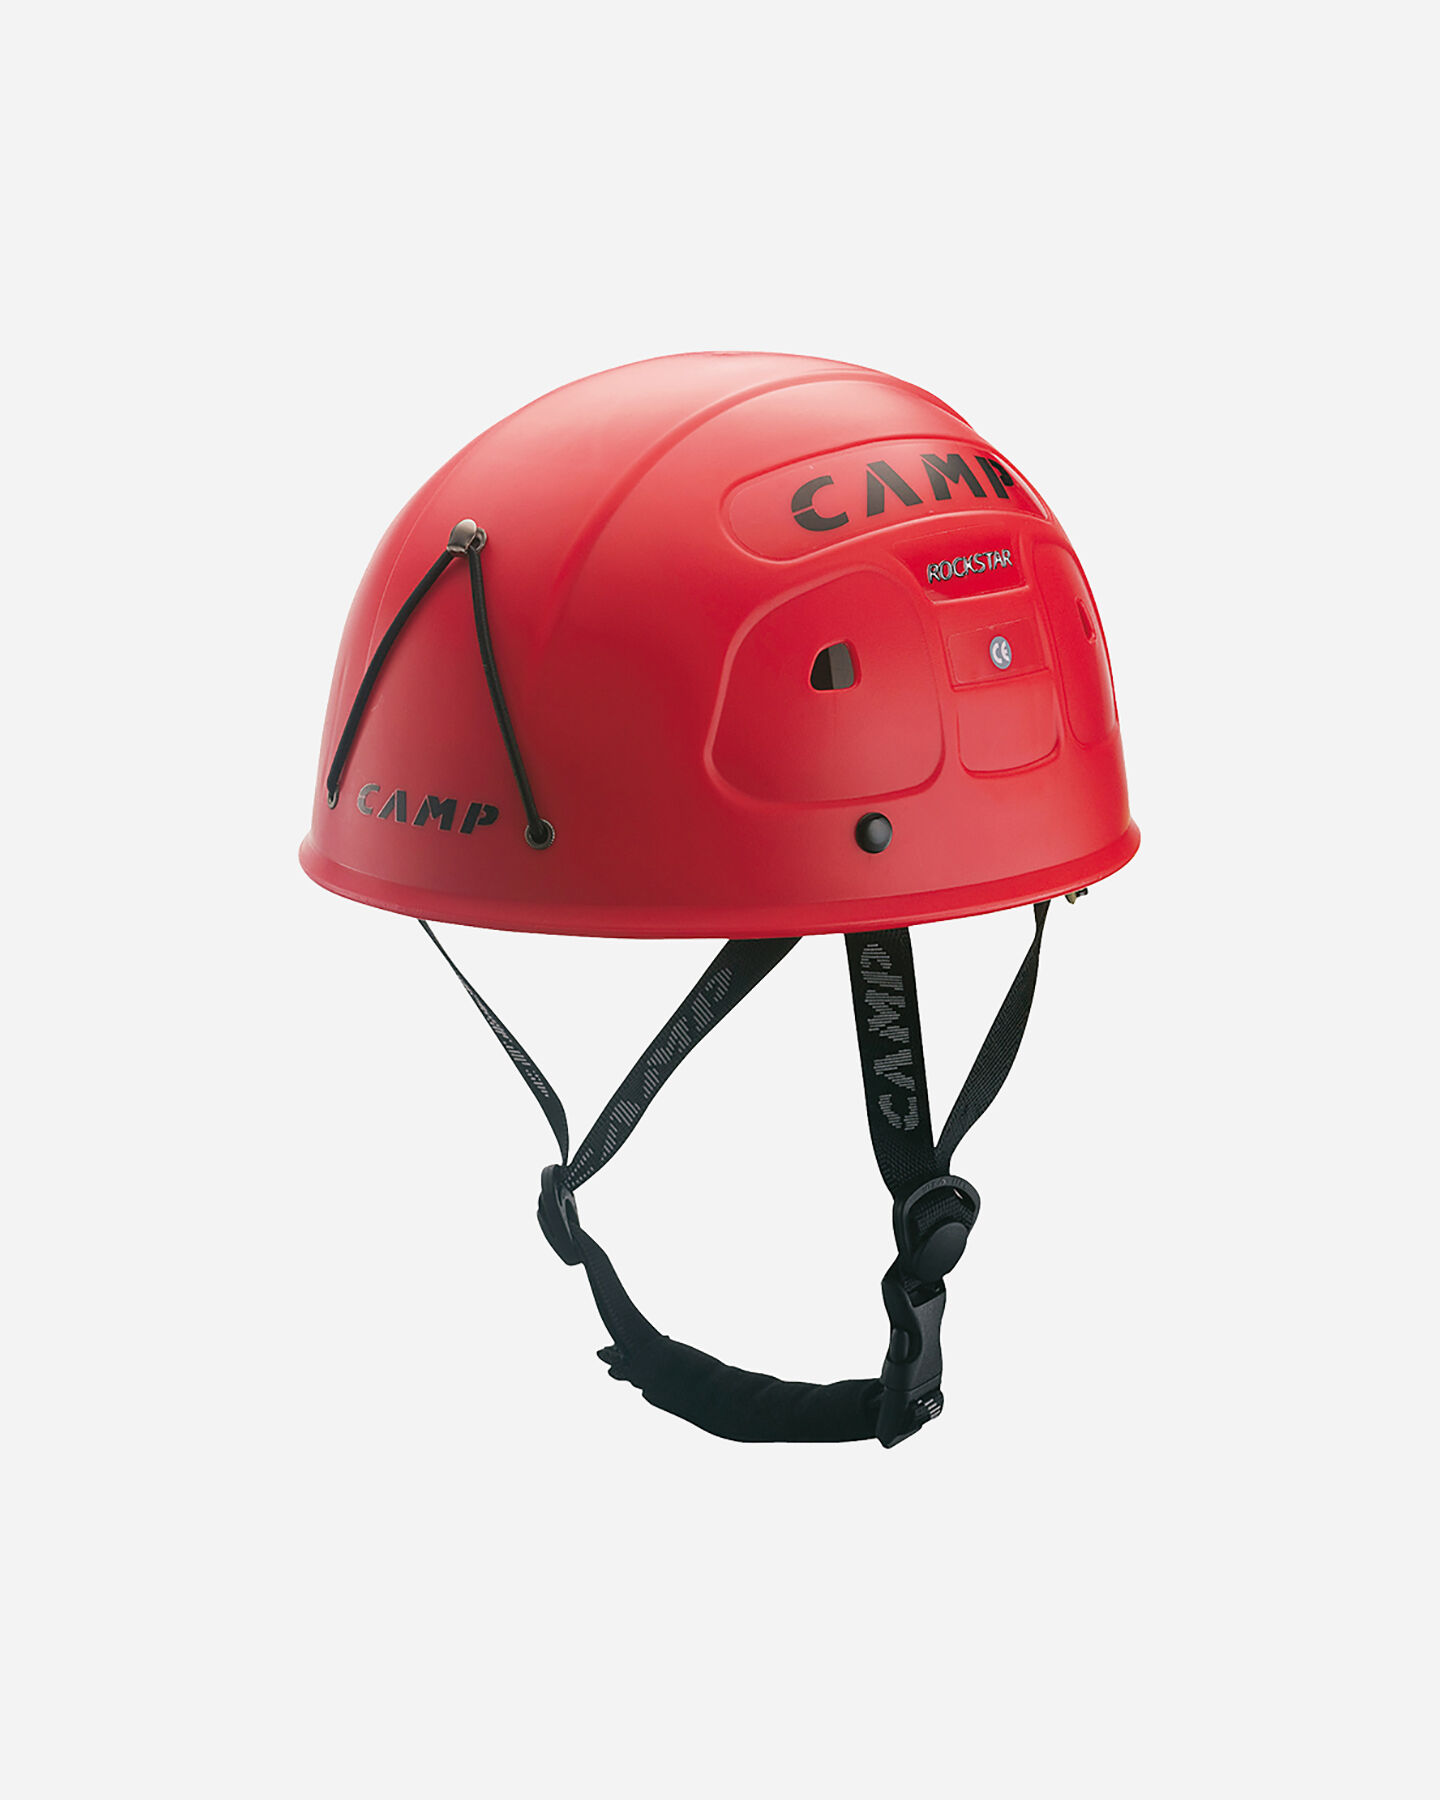  Casco alpinismo CAMP CASCO CAMP ROCK STAR 202.01 S0009958|9999|UNI scatto 0